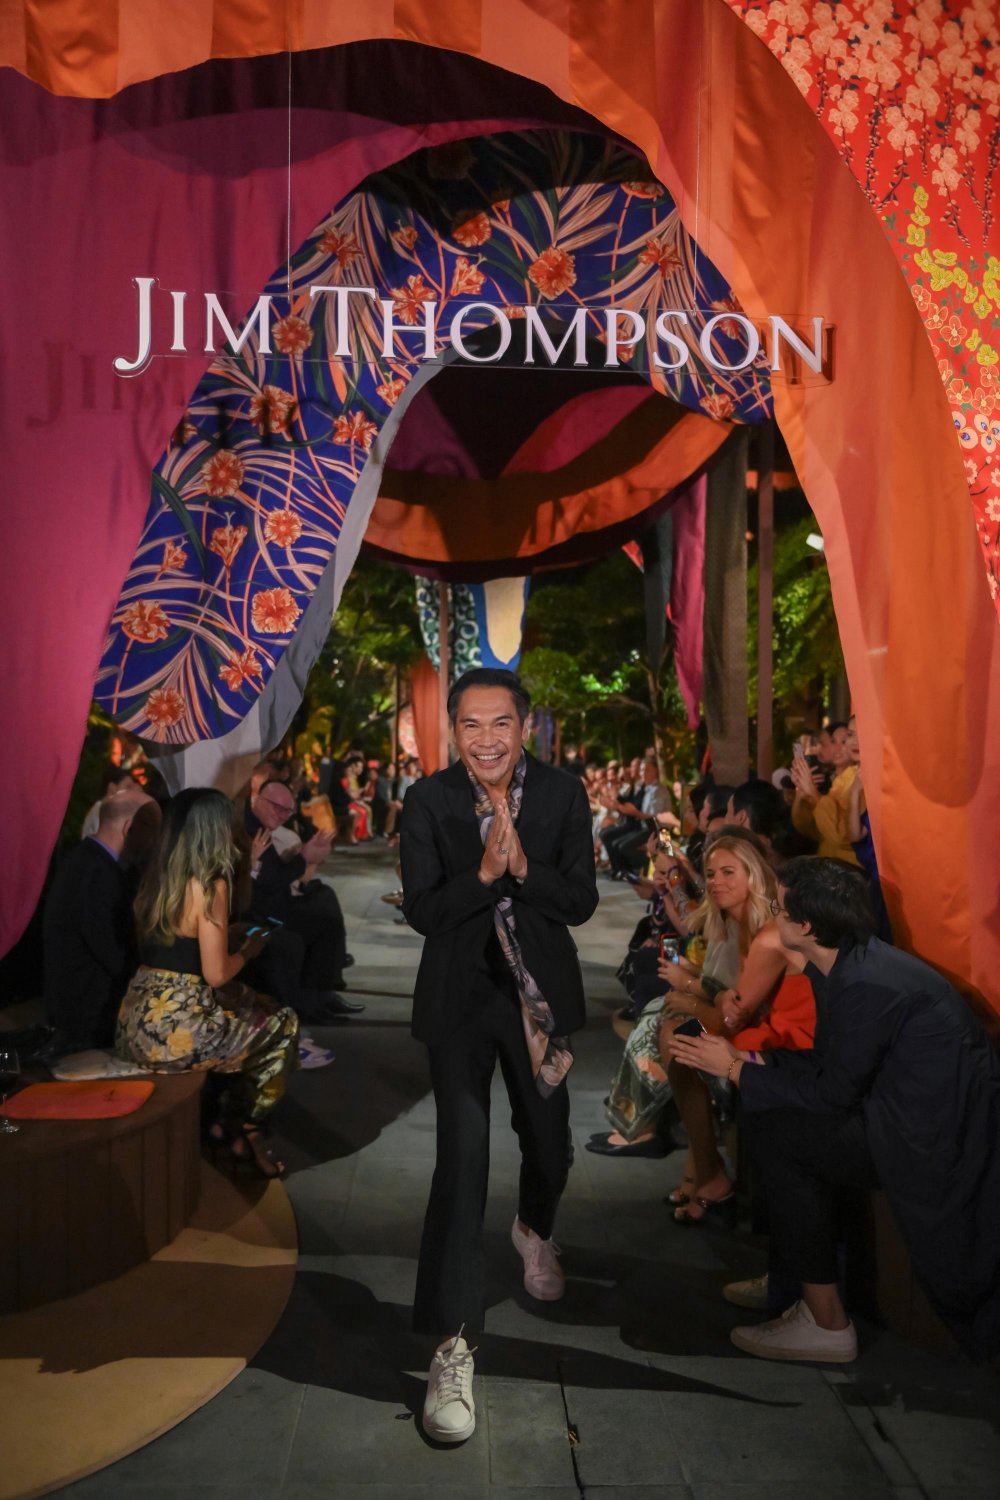 แฟชั่นโชว์ครั้งแรกของ จิม ทอมป์สัน, 42 ลุคสุดปัง, Jim Thompson Heritage Quarter, -พฤกษ์ พานิช, นุนิว-ชวรินทร์ เพริศพิริยะวงศ์, Silk Fabric Dance